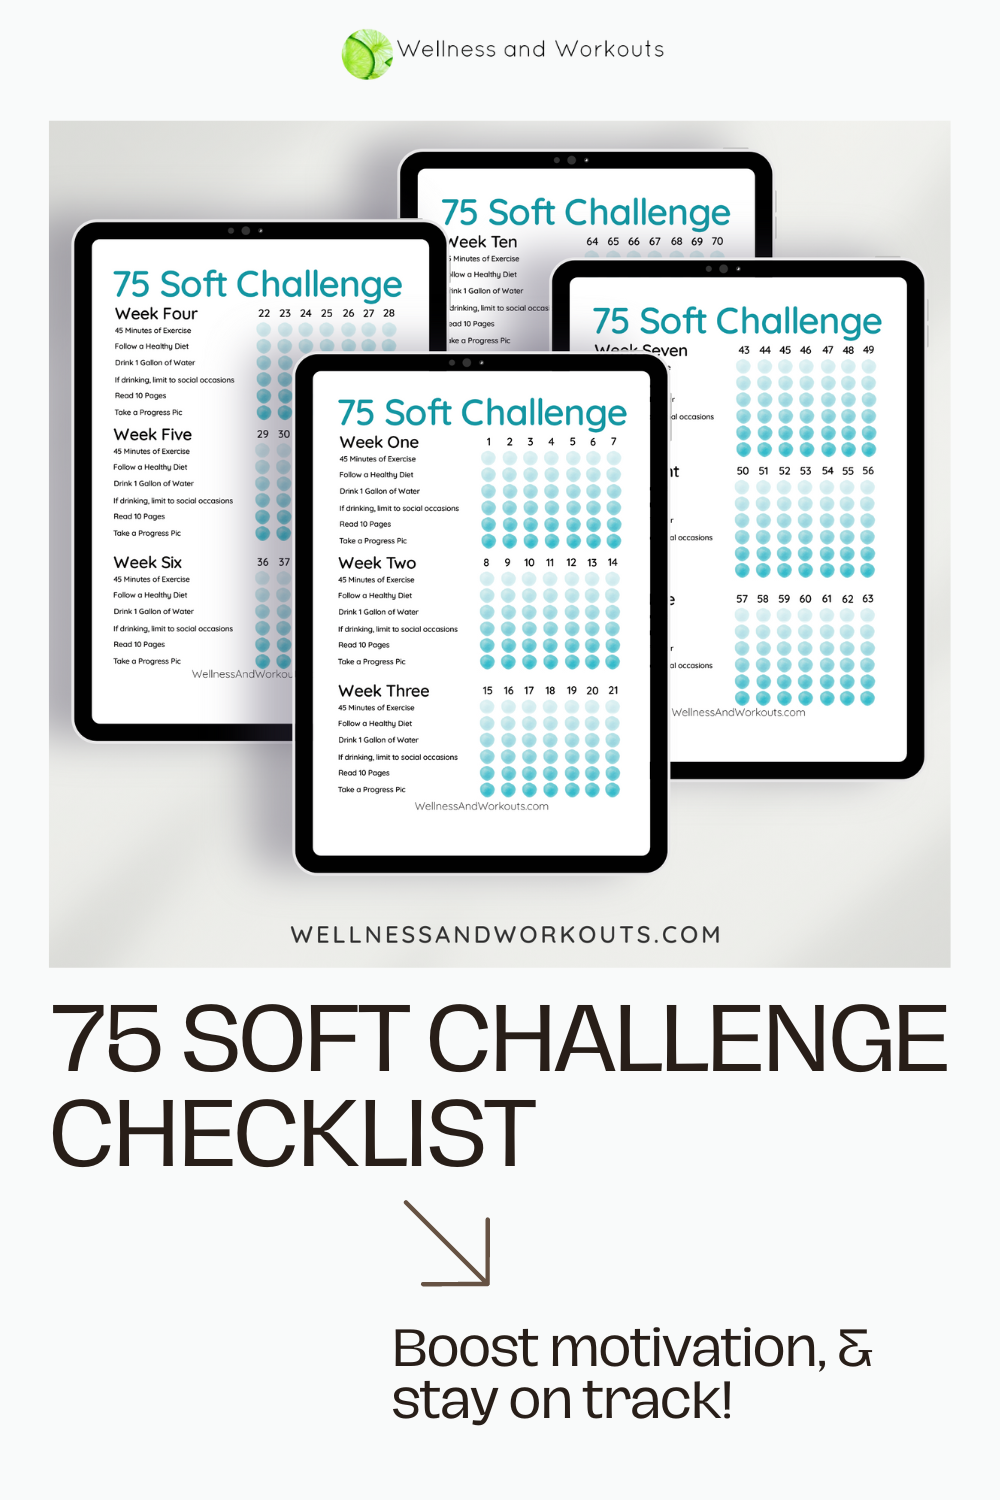 75 Soft Challenge Checklist